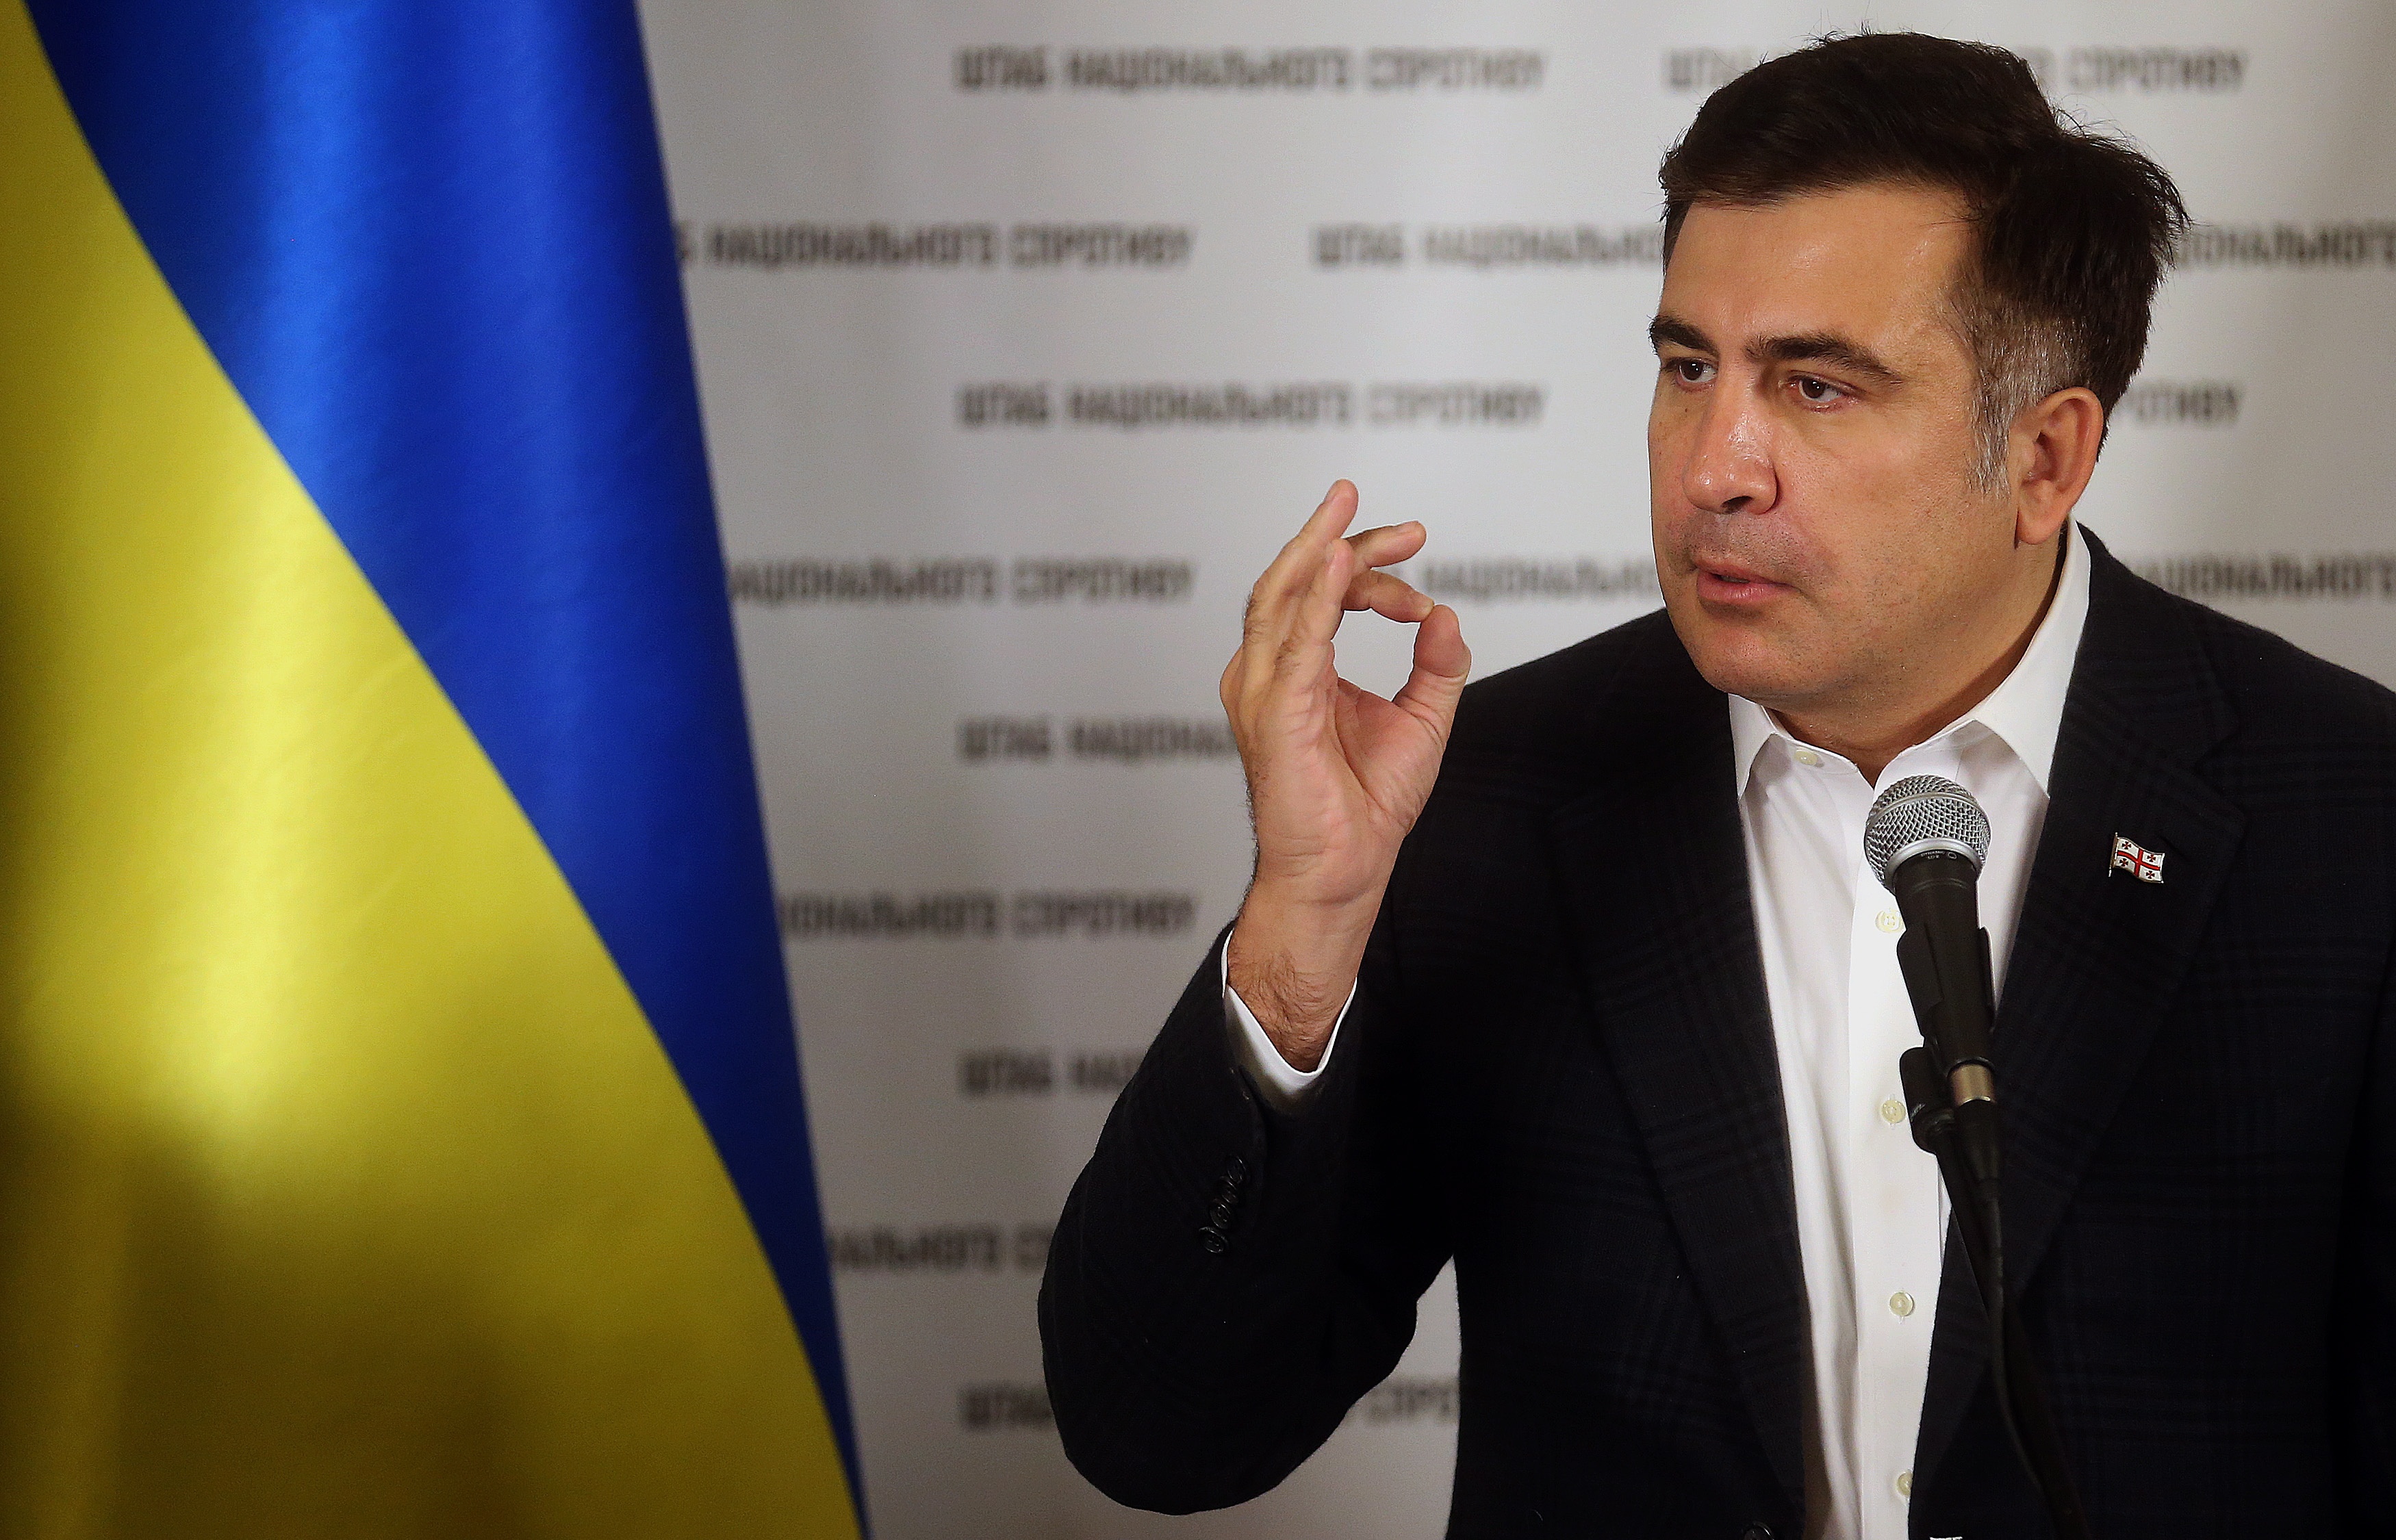 "Снимут с должности - пойду в оппозицию": Яценюк ставит глупые ультиматумы, - Саакашвили